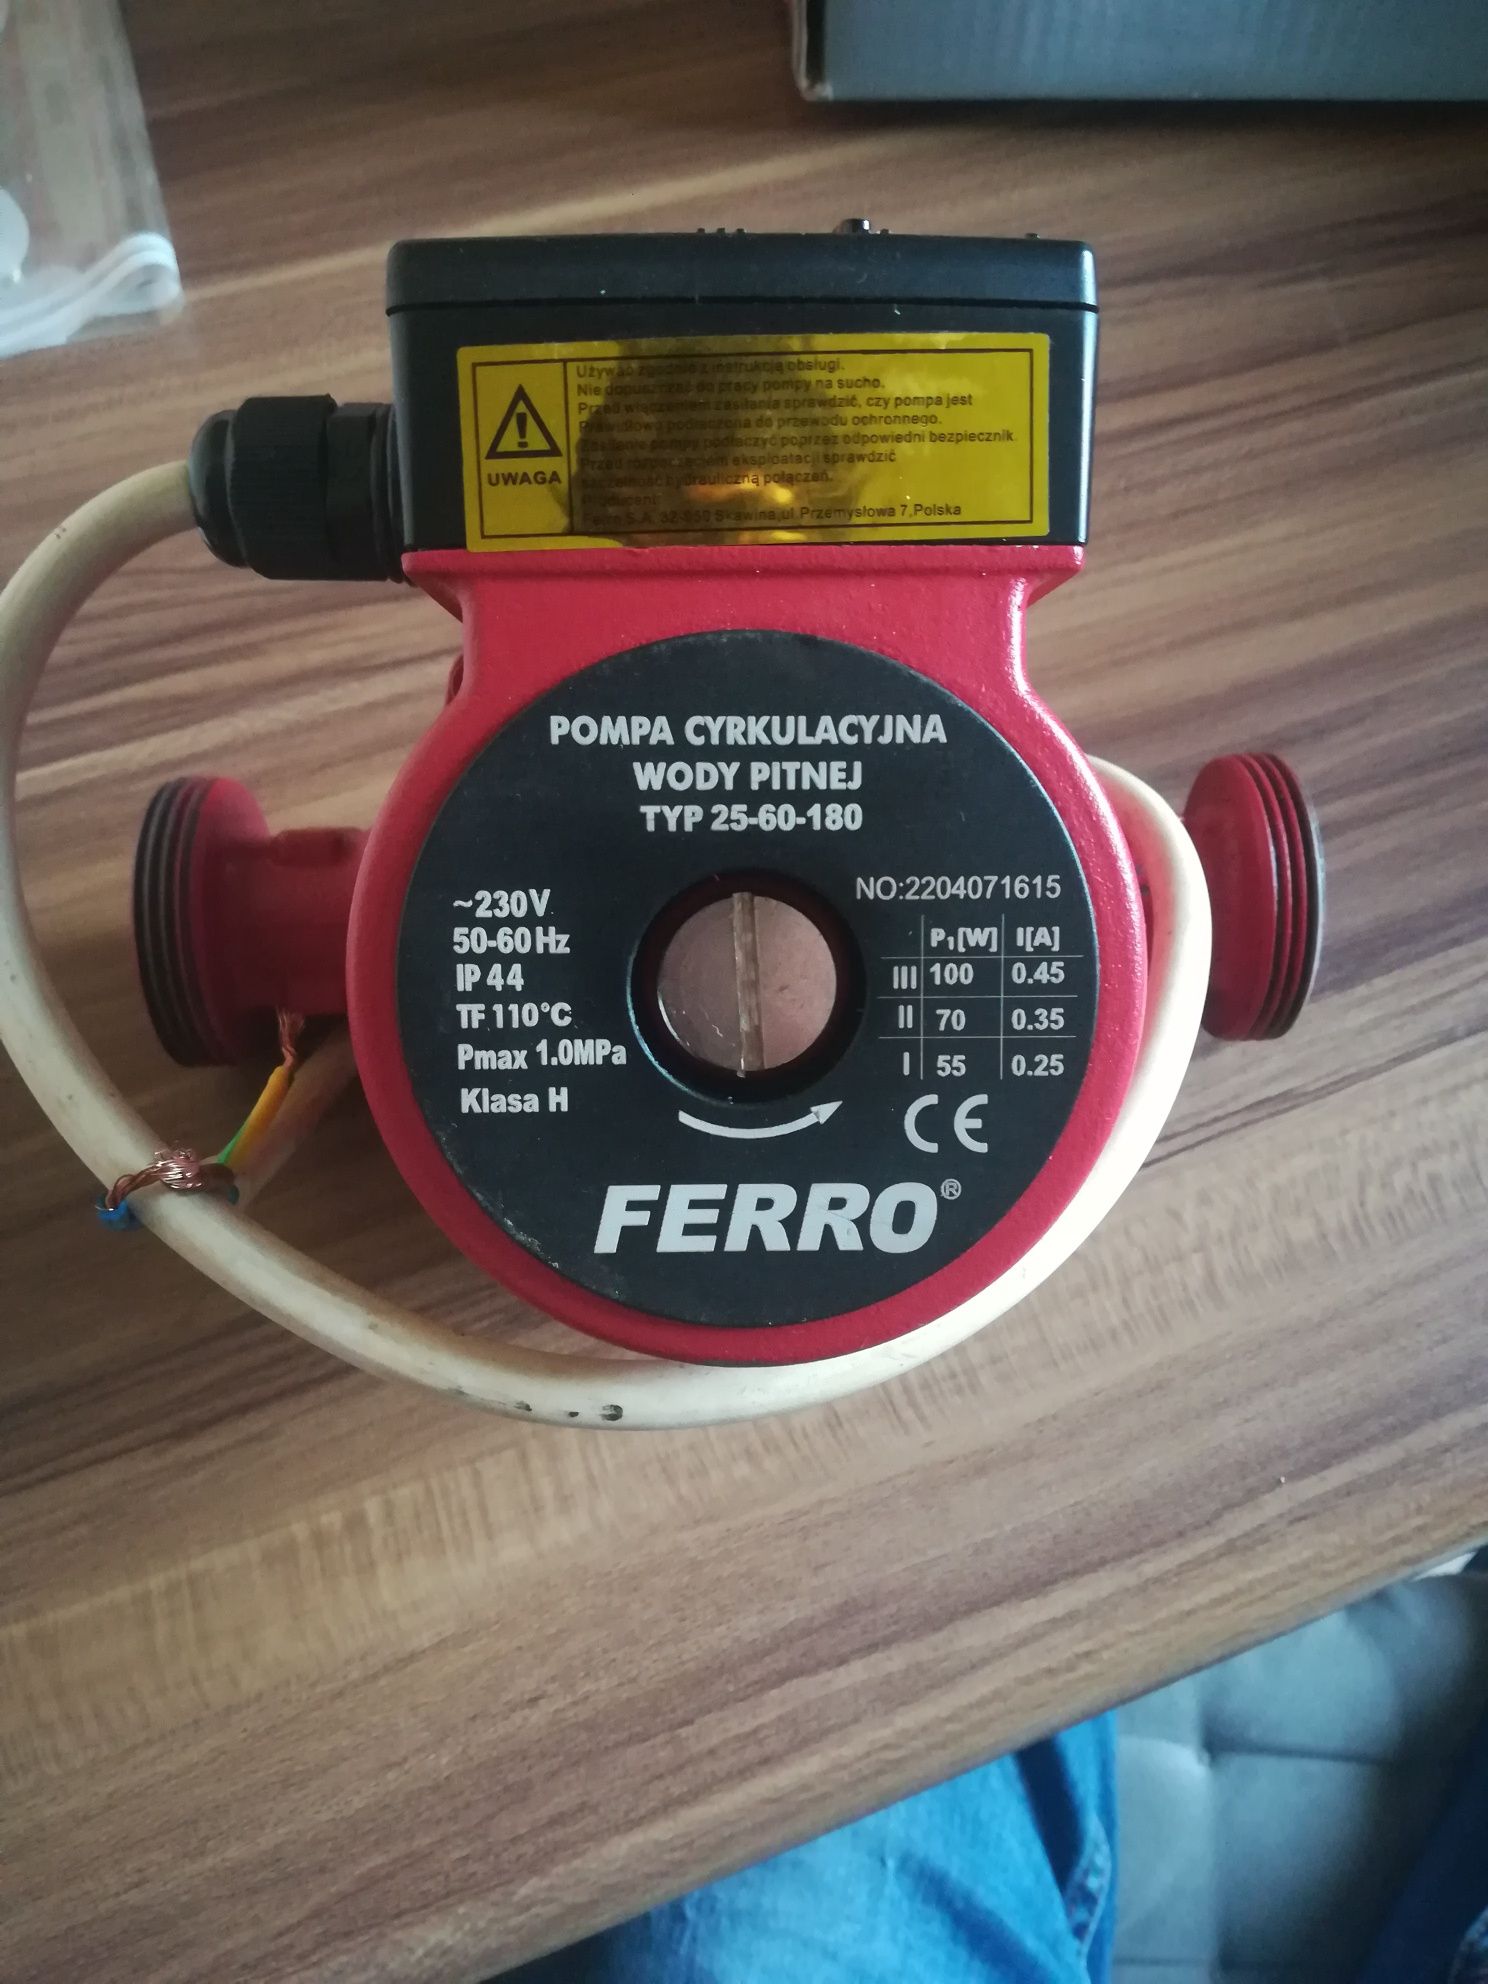 Pompa cyrkulacyjna wody pitnej Ferro